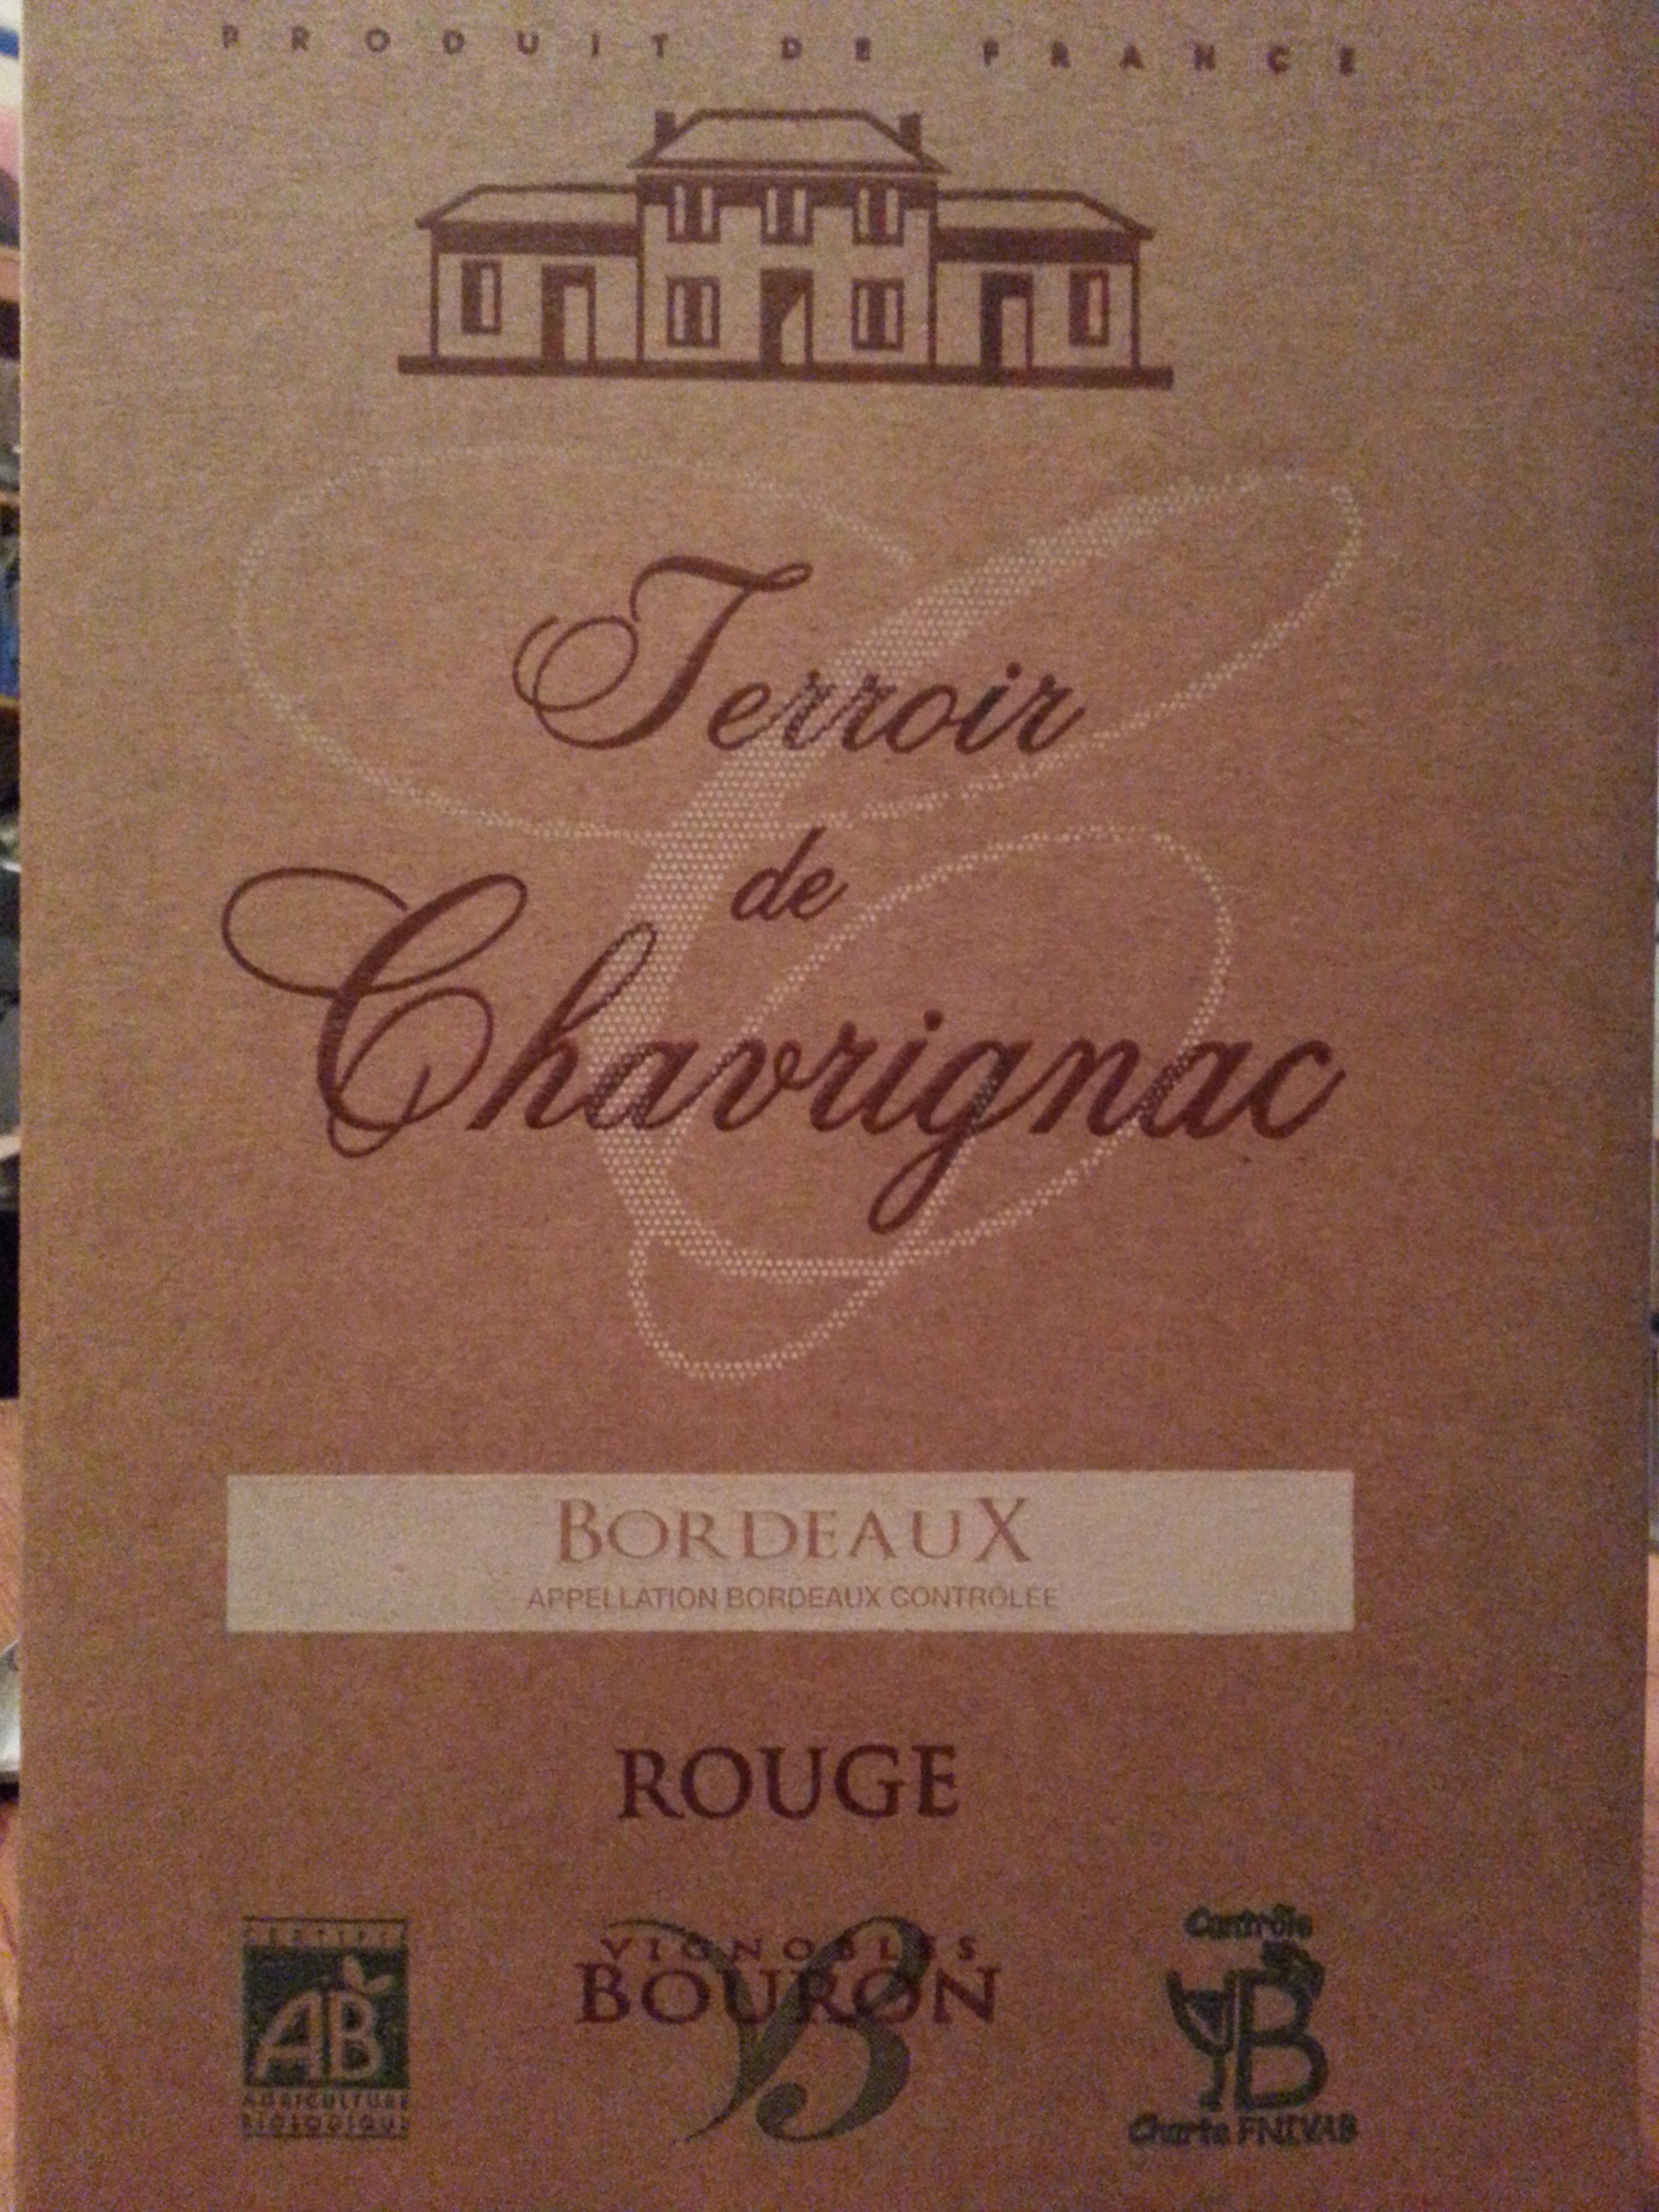 Terroir de Chavrignac, bordeaux - Product - fr